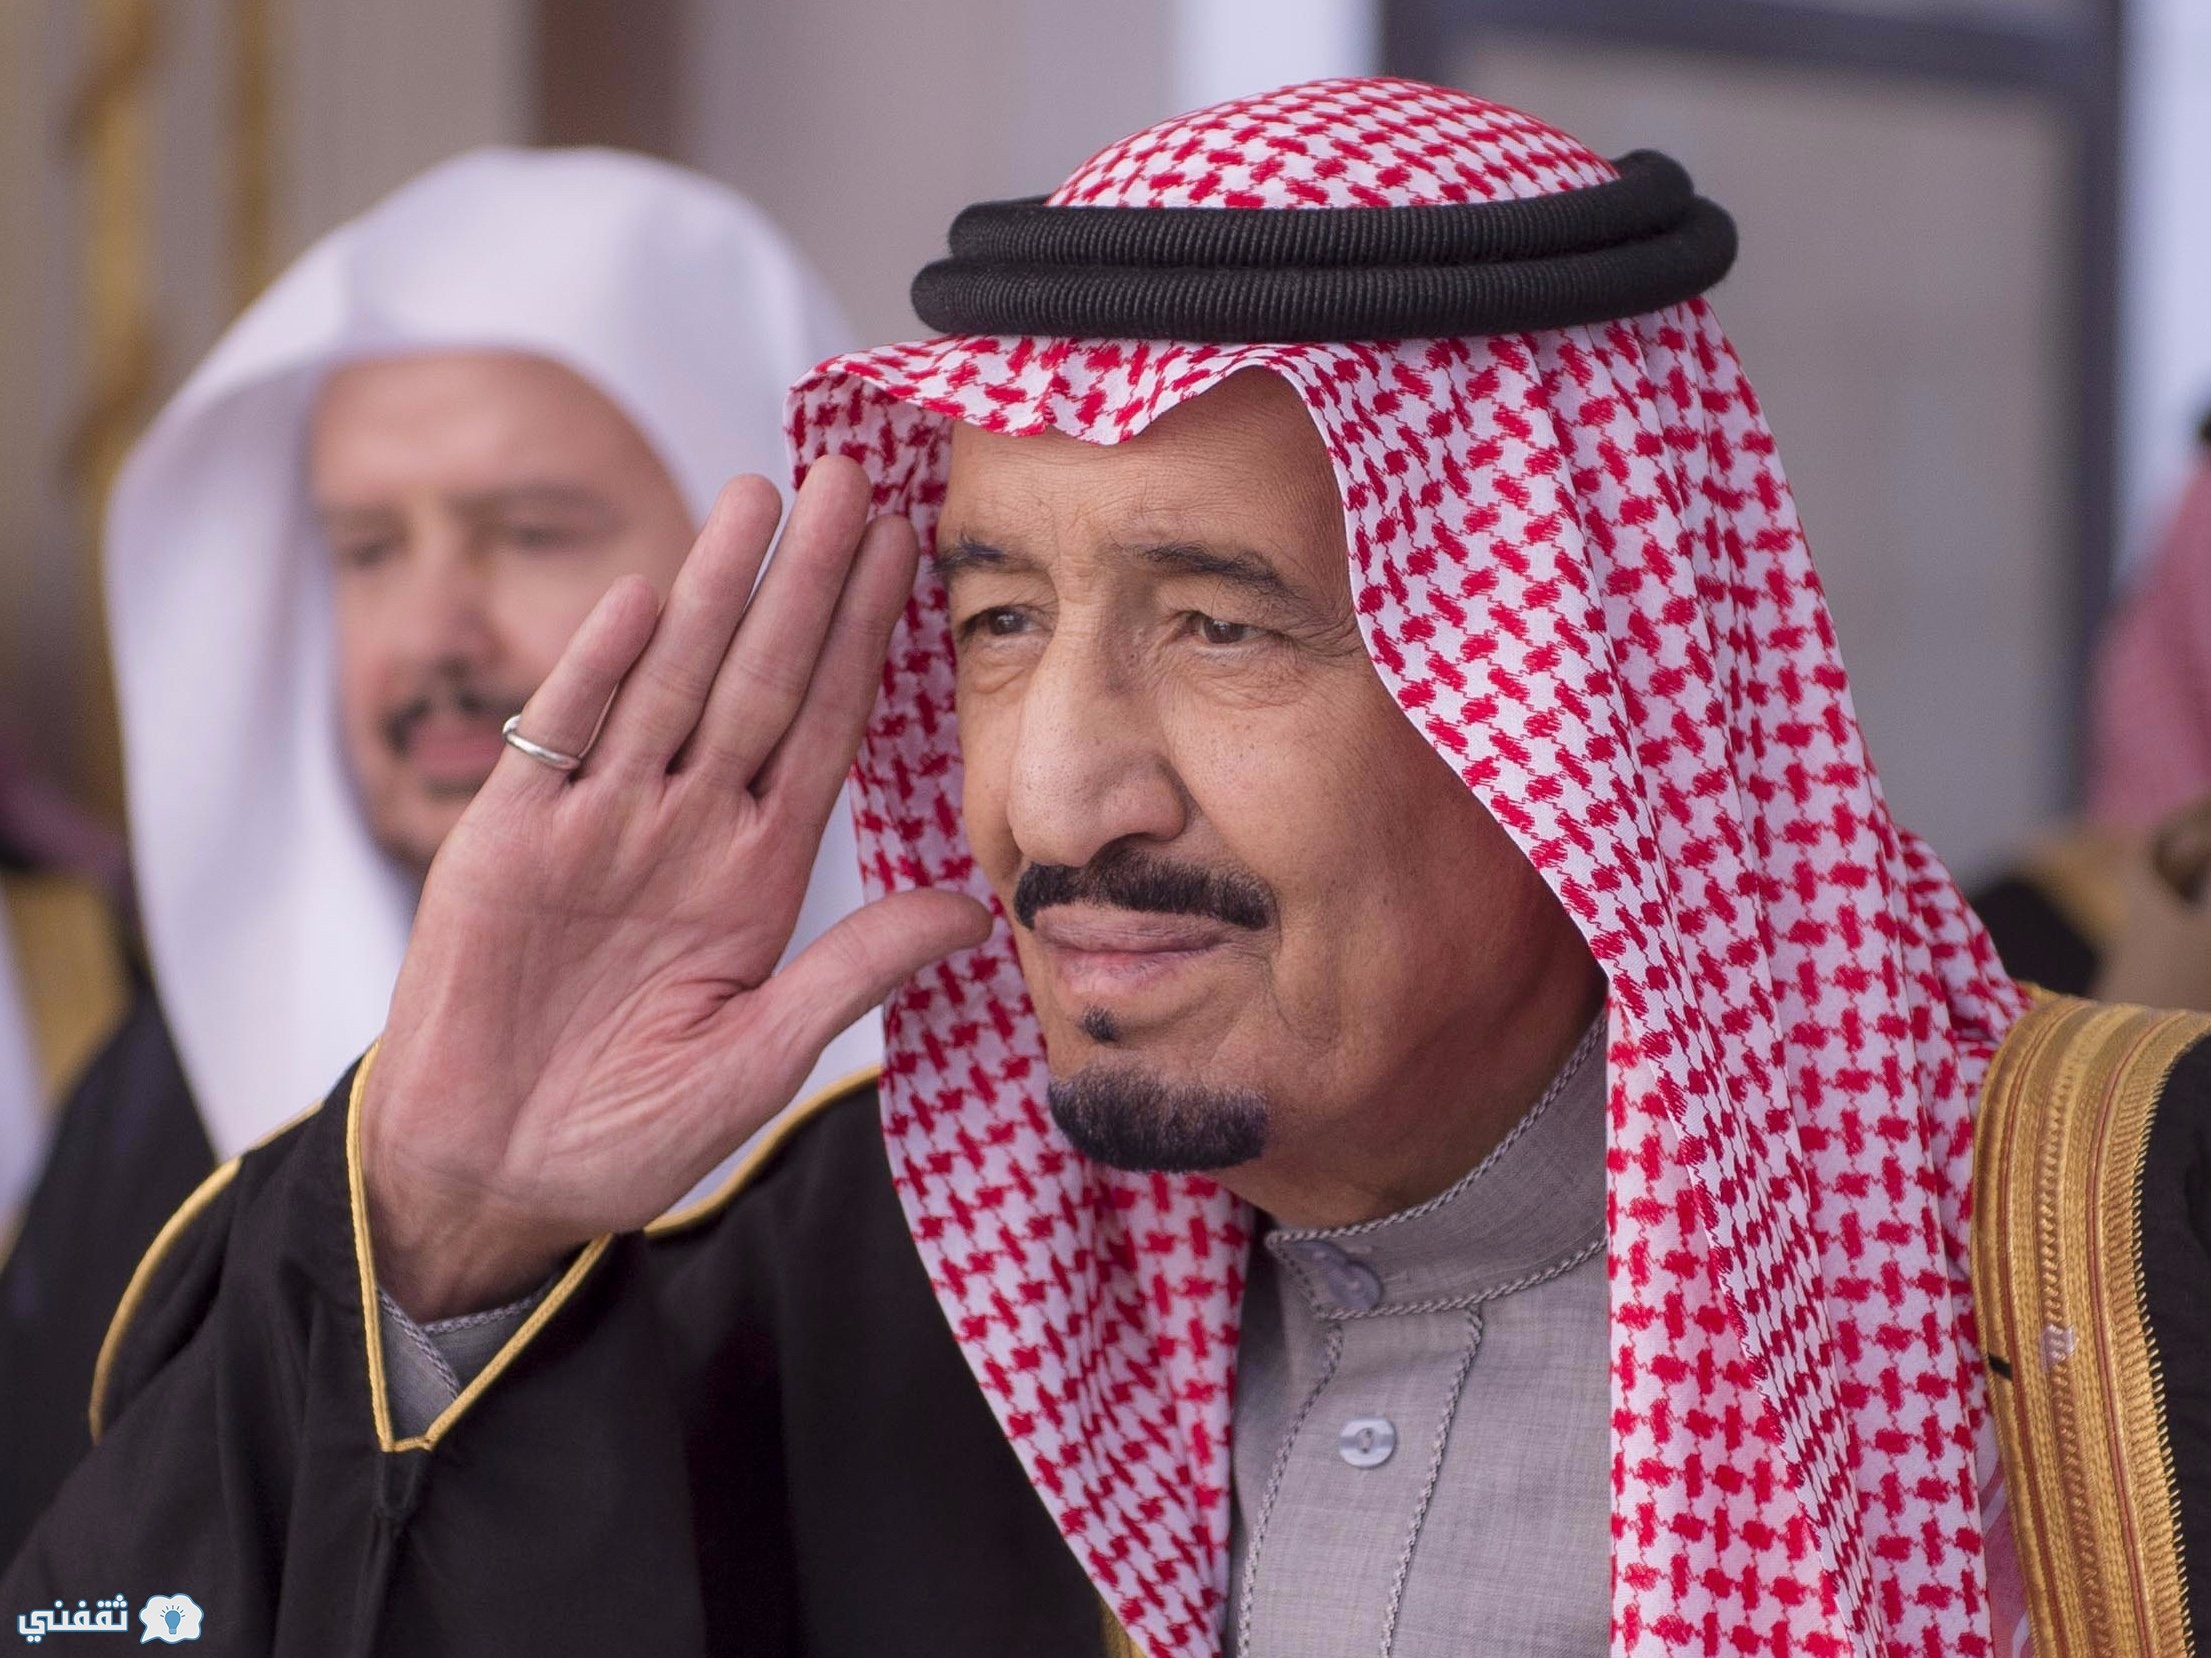 الكونجرس يناقش مقاضاة السعودية بسبب أحداث 11 سبتمبر والمملكة تهدد برد قاسي